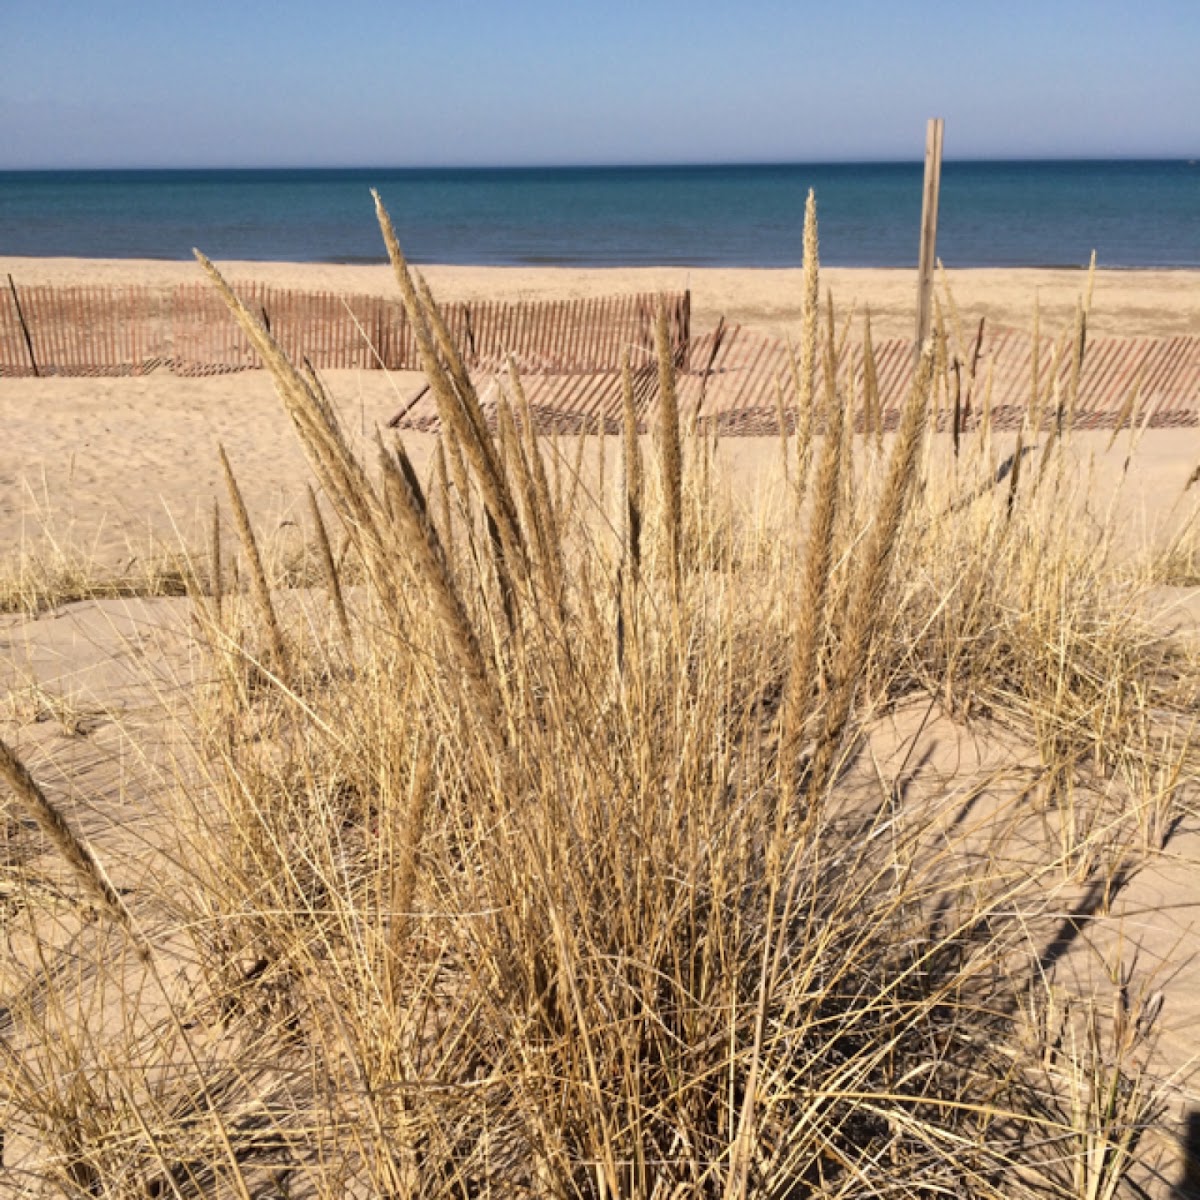 Beach grass, European marram grass, bent grass